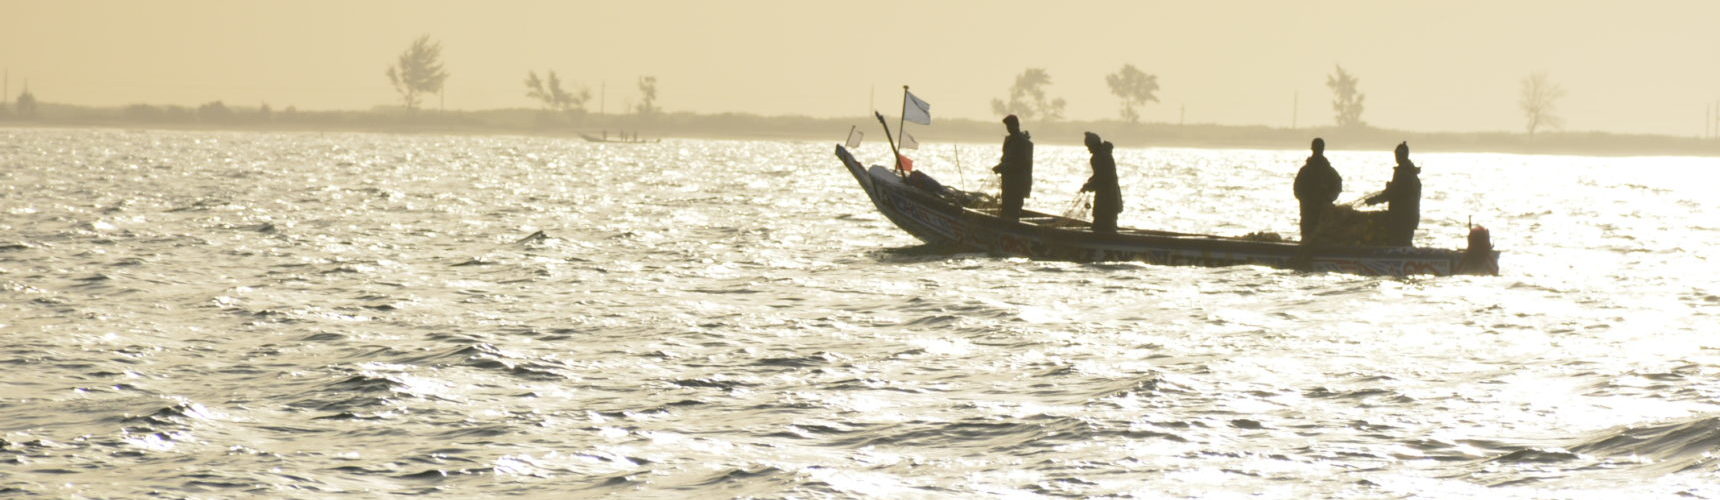 Pêcheurs au large de dionwar